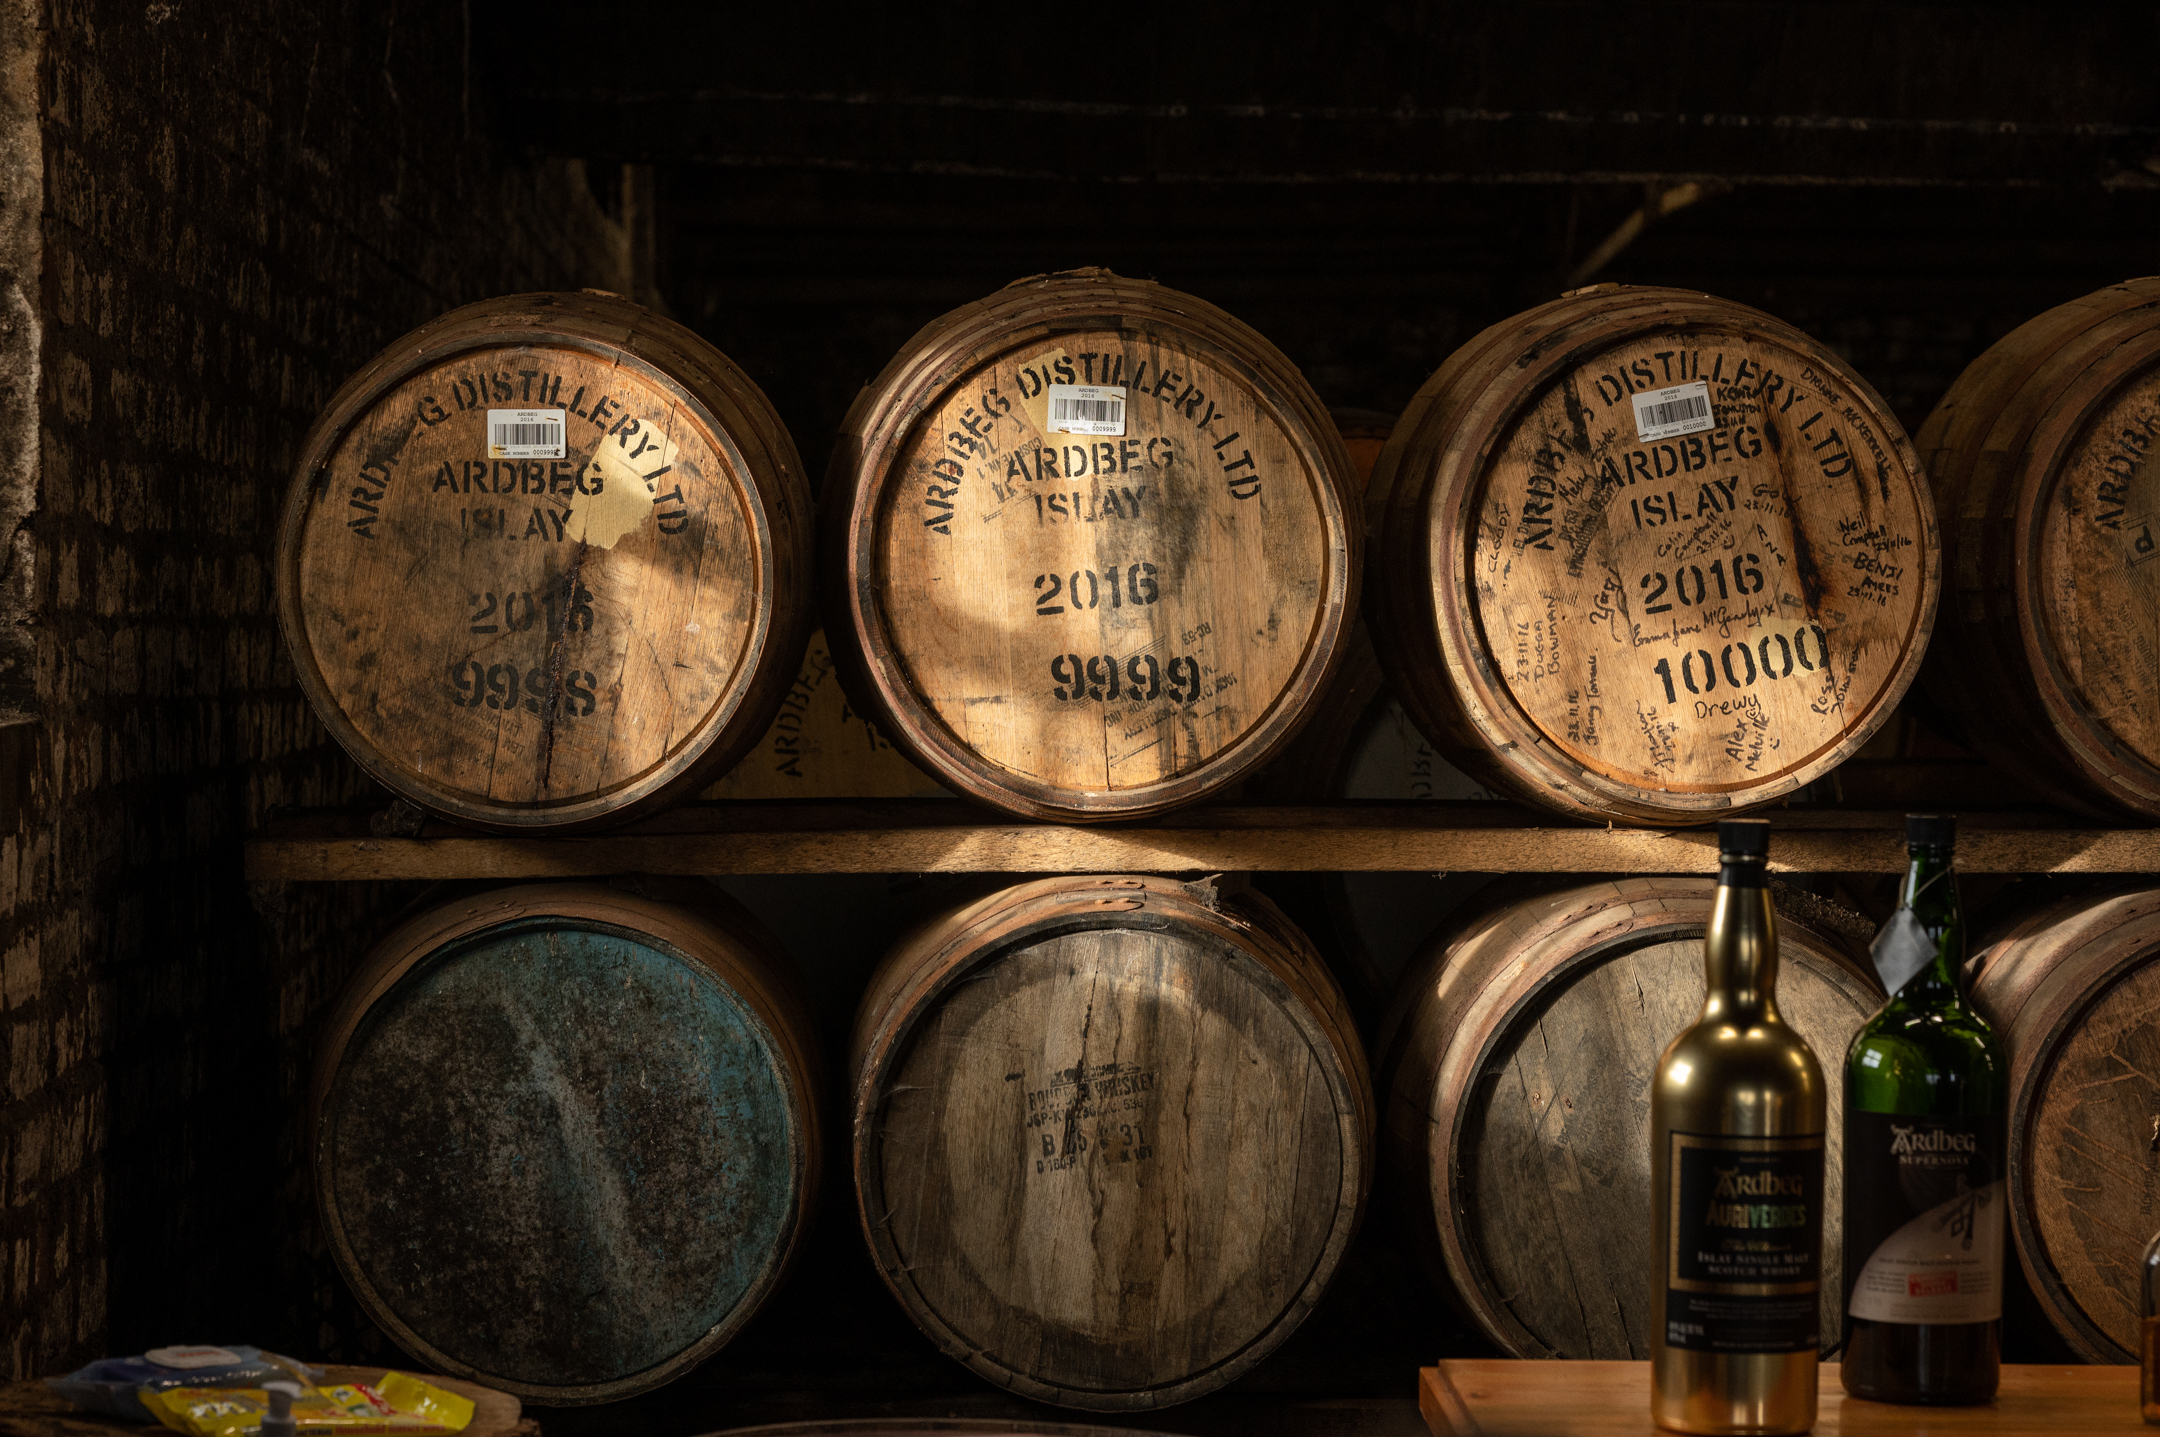 Whisky casks at Ardbeg, Islay